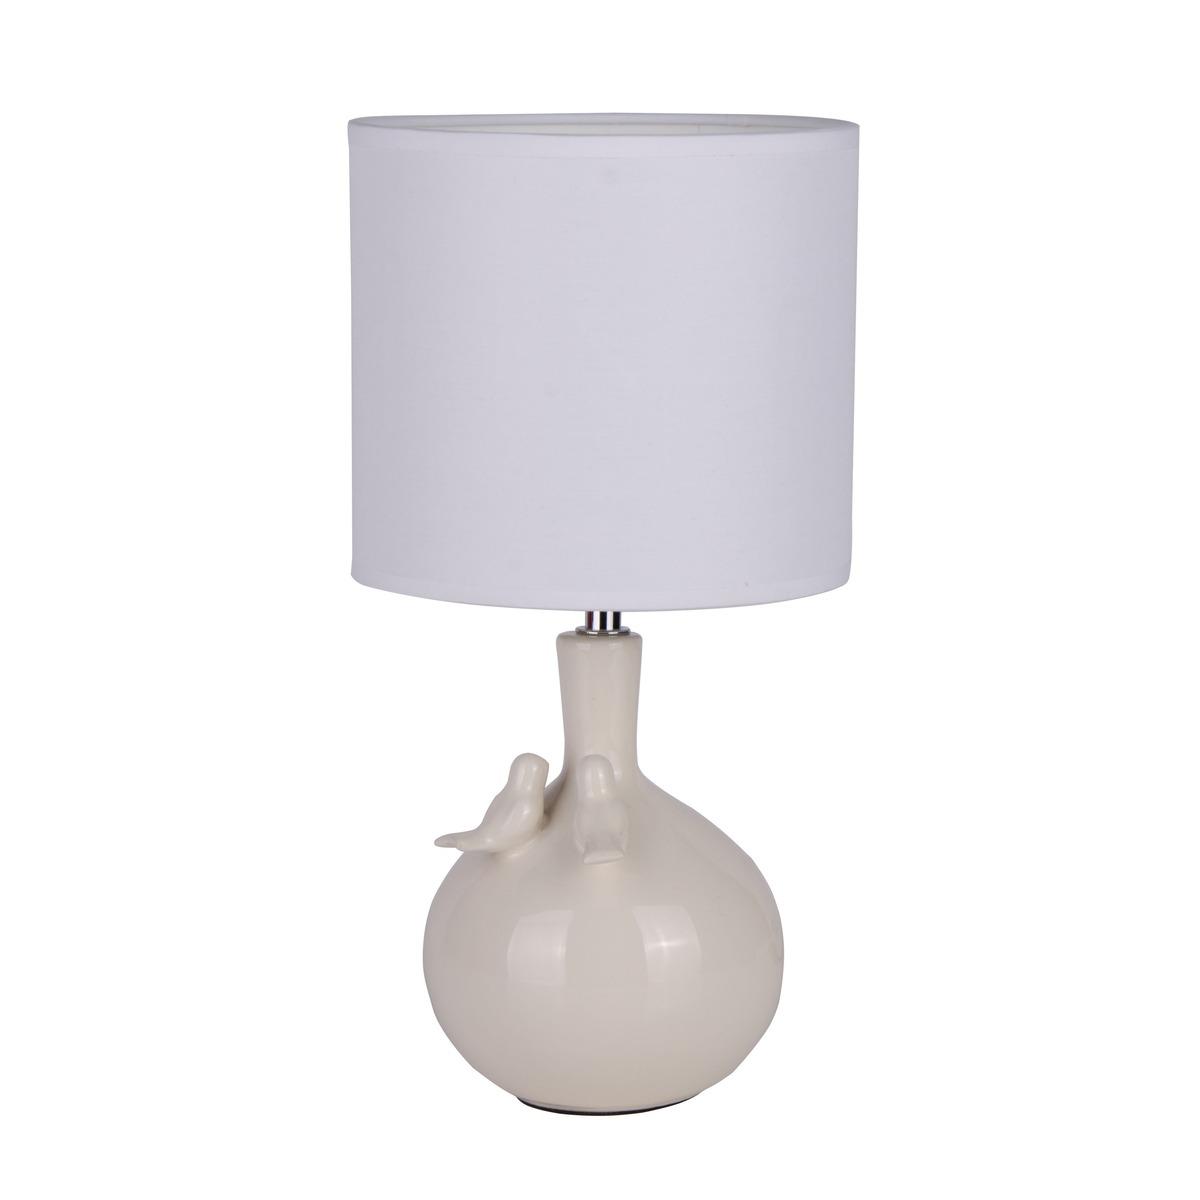 Lampe en céramique modèle oiseau - 18 x H 36 cm - Blanc ivoire